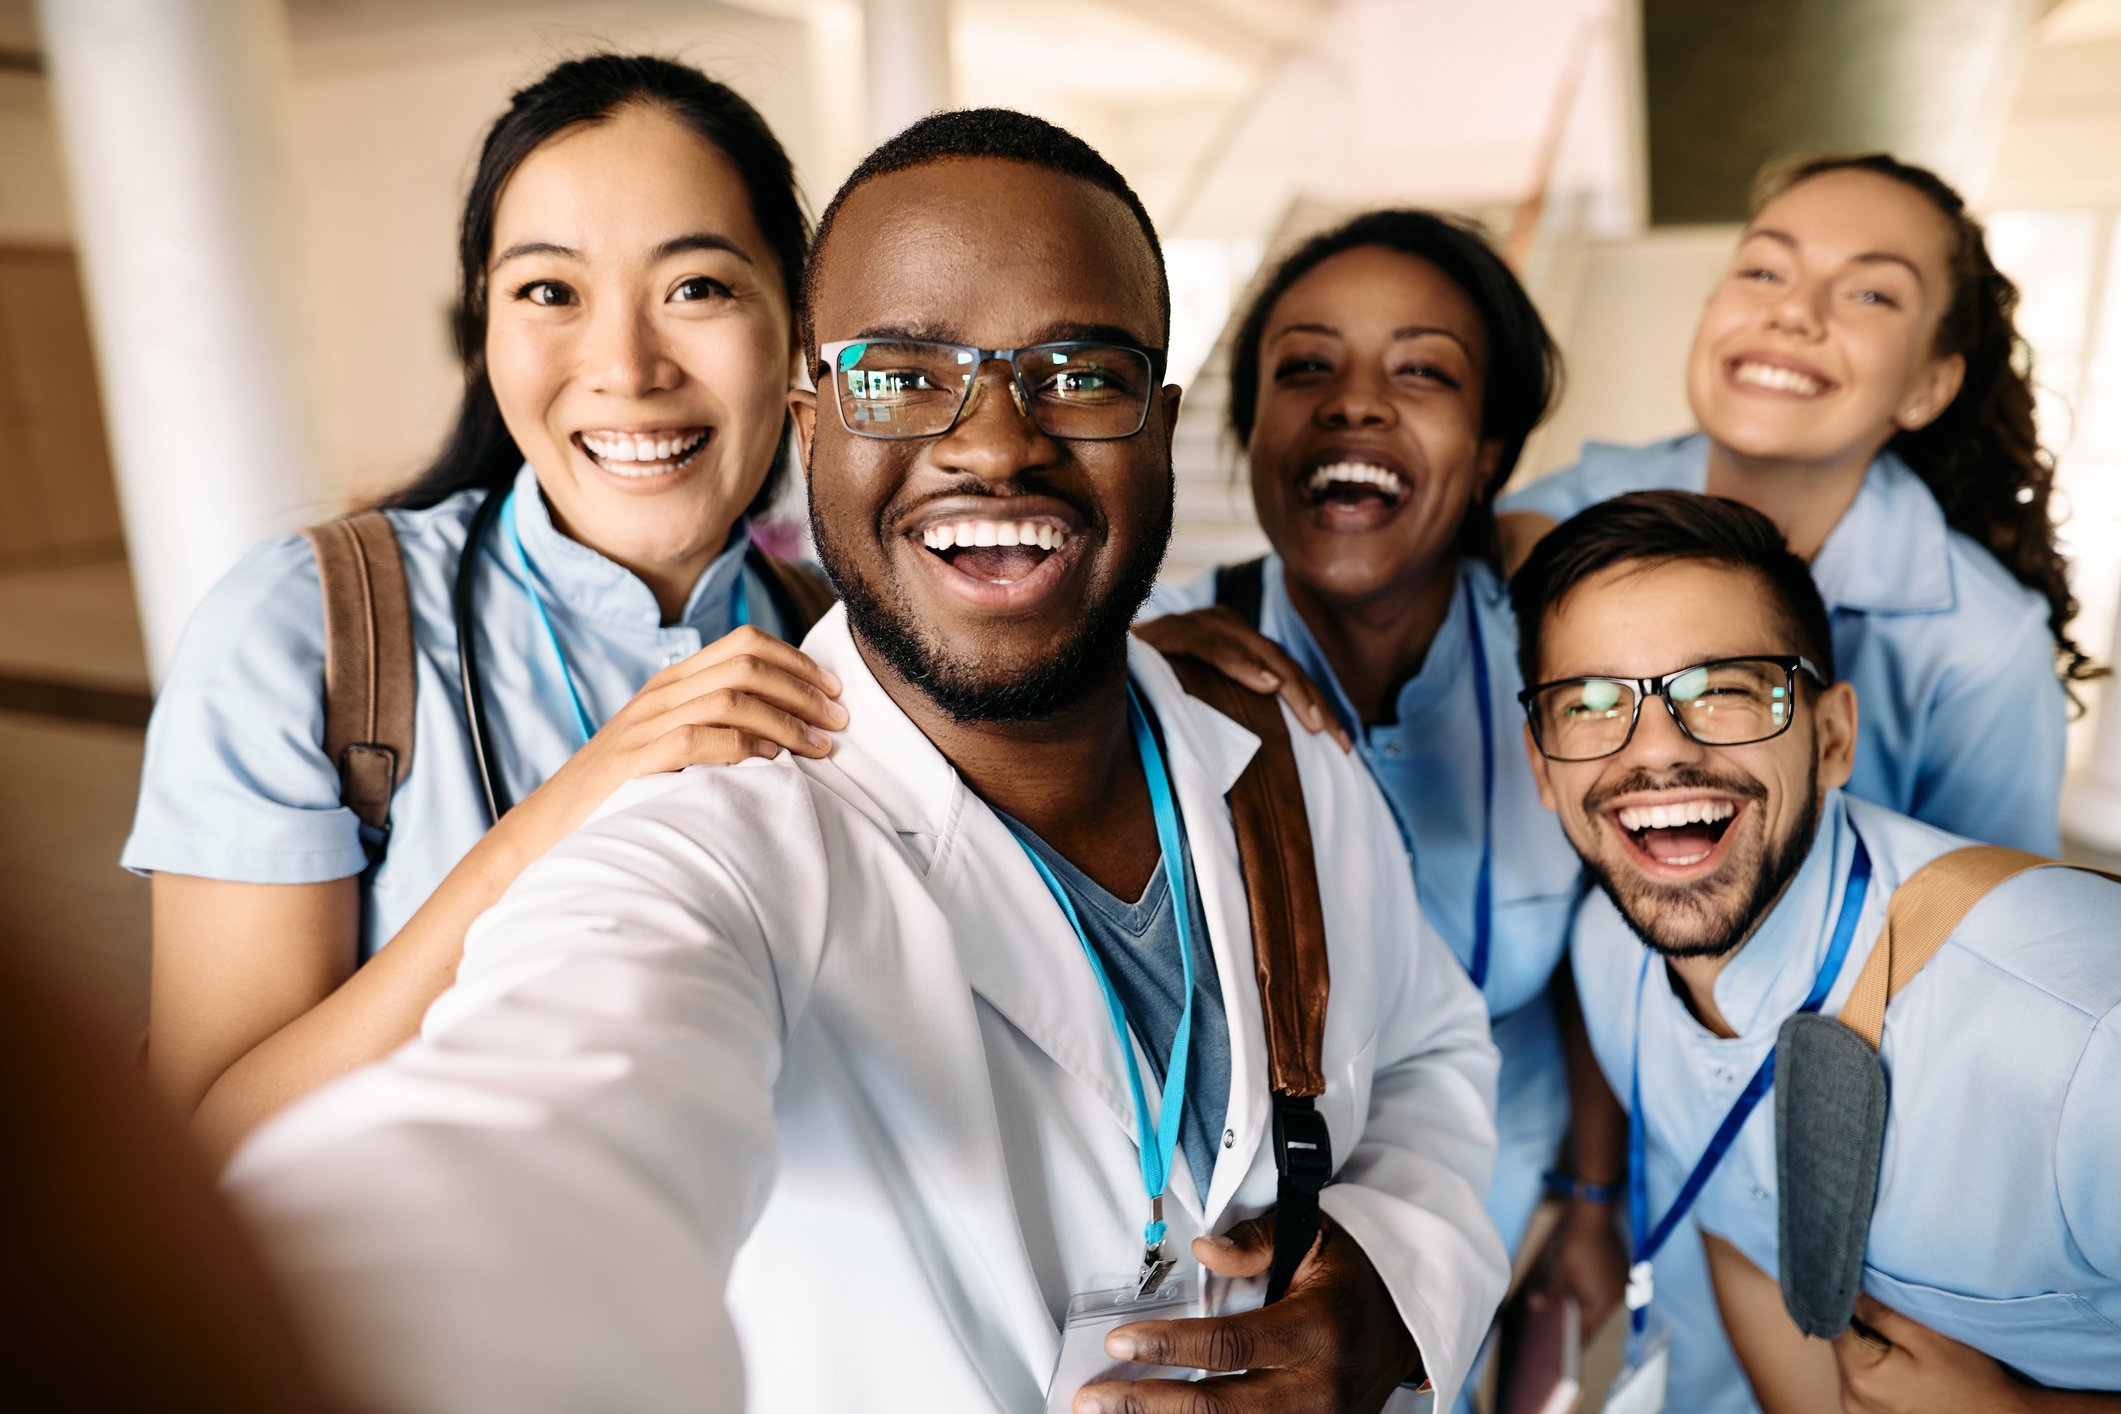 vier Ärzte und Ärztinnen nehmen ein Selfie auf und lächeln dabei in die Kamera